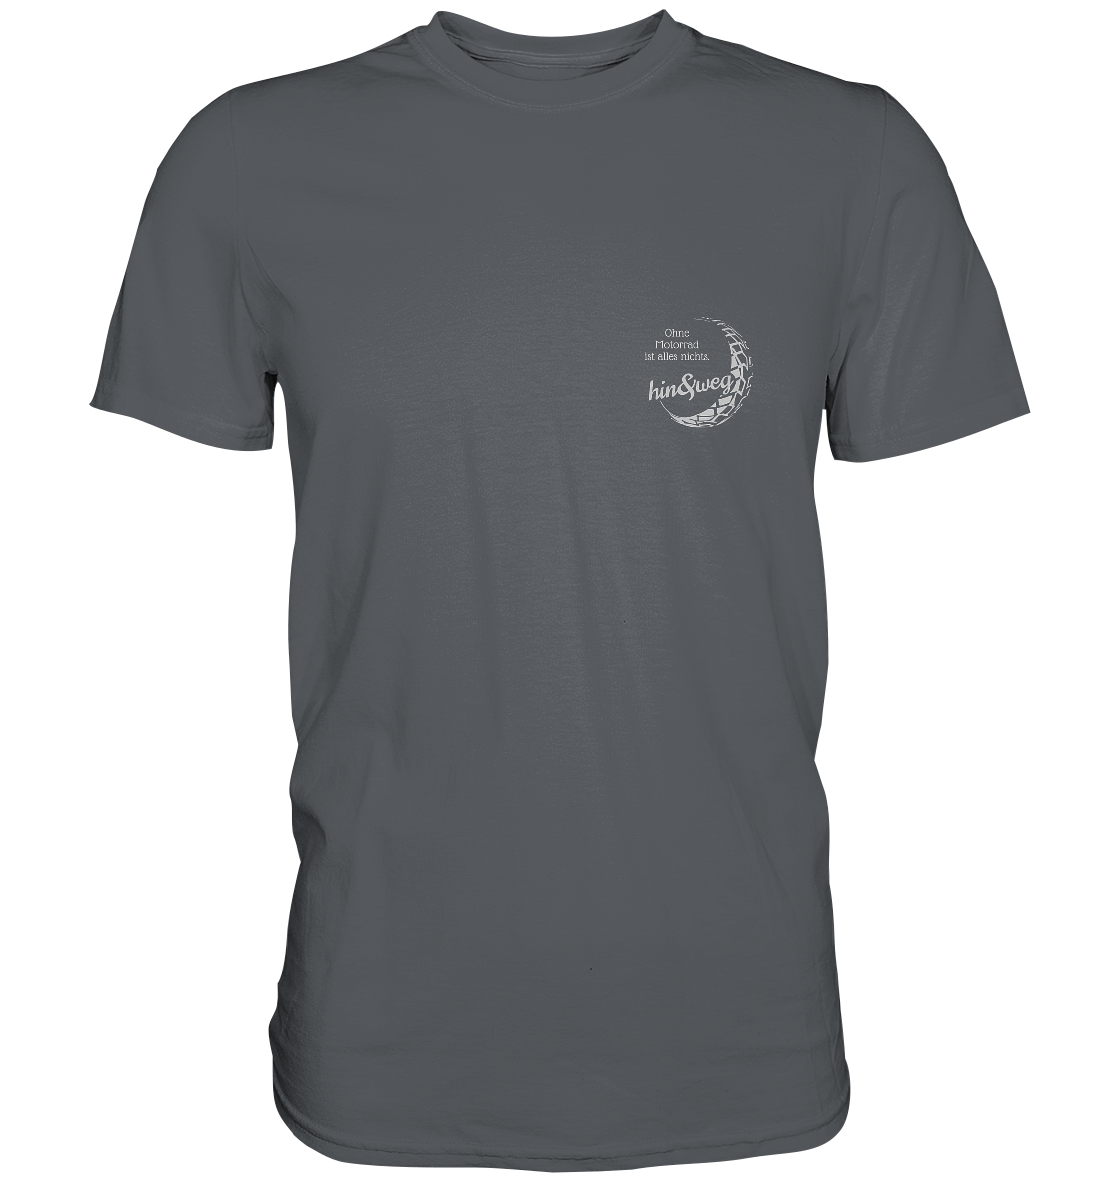 Herren-T-Shirt Rundhals, weißer Aufdruck: Logo hin und weg mit Spruch "Ohne Motorrad ist alles nichts.", grau